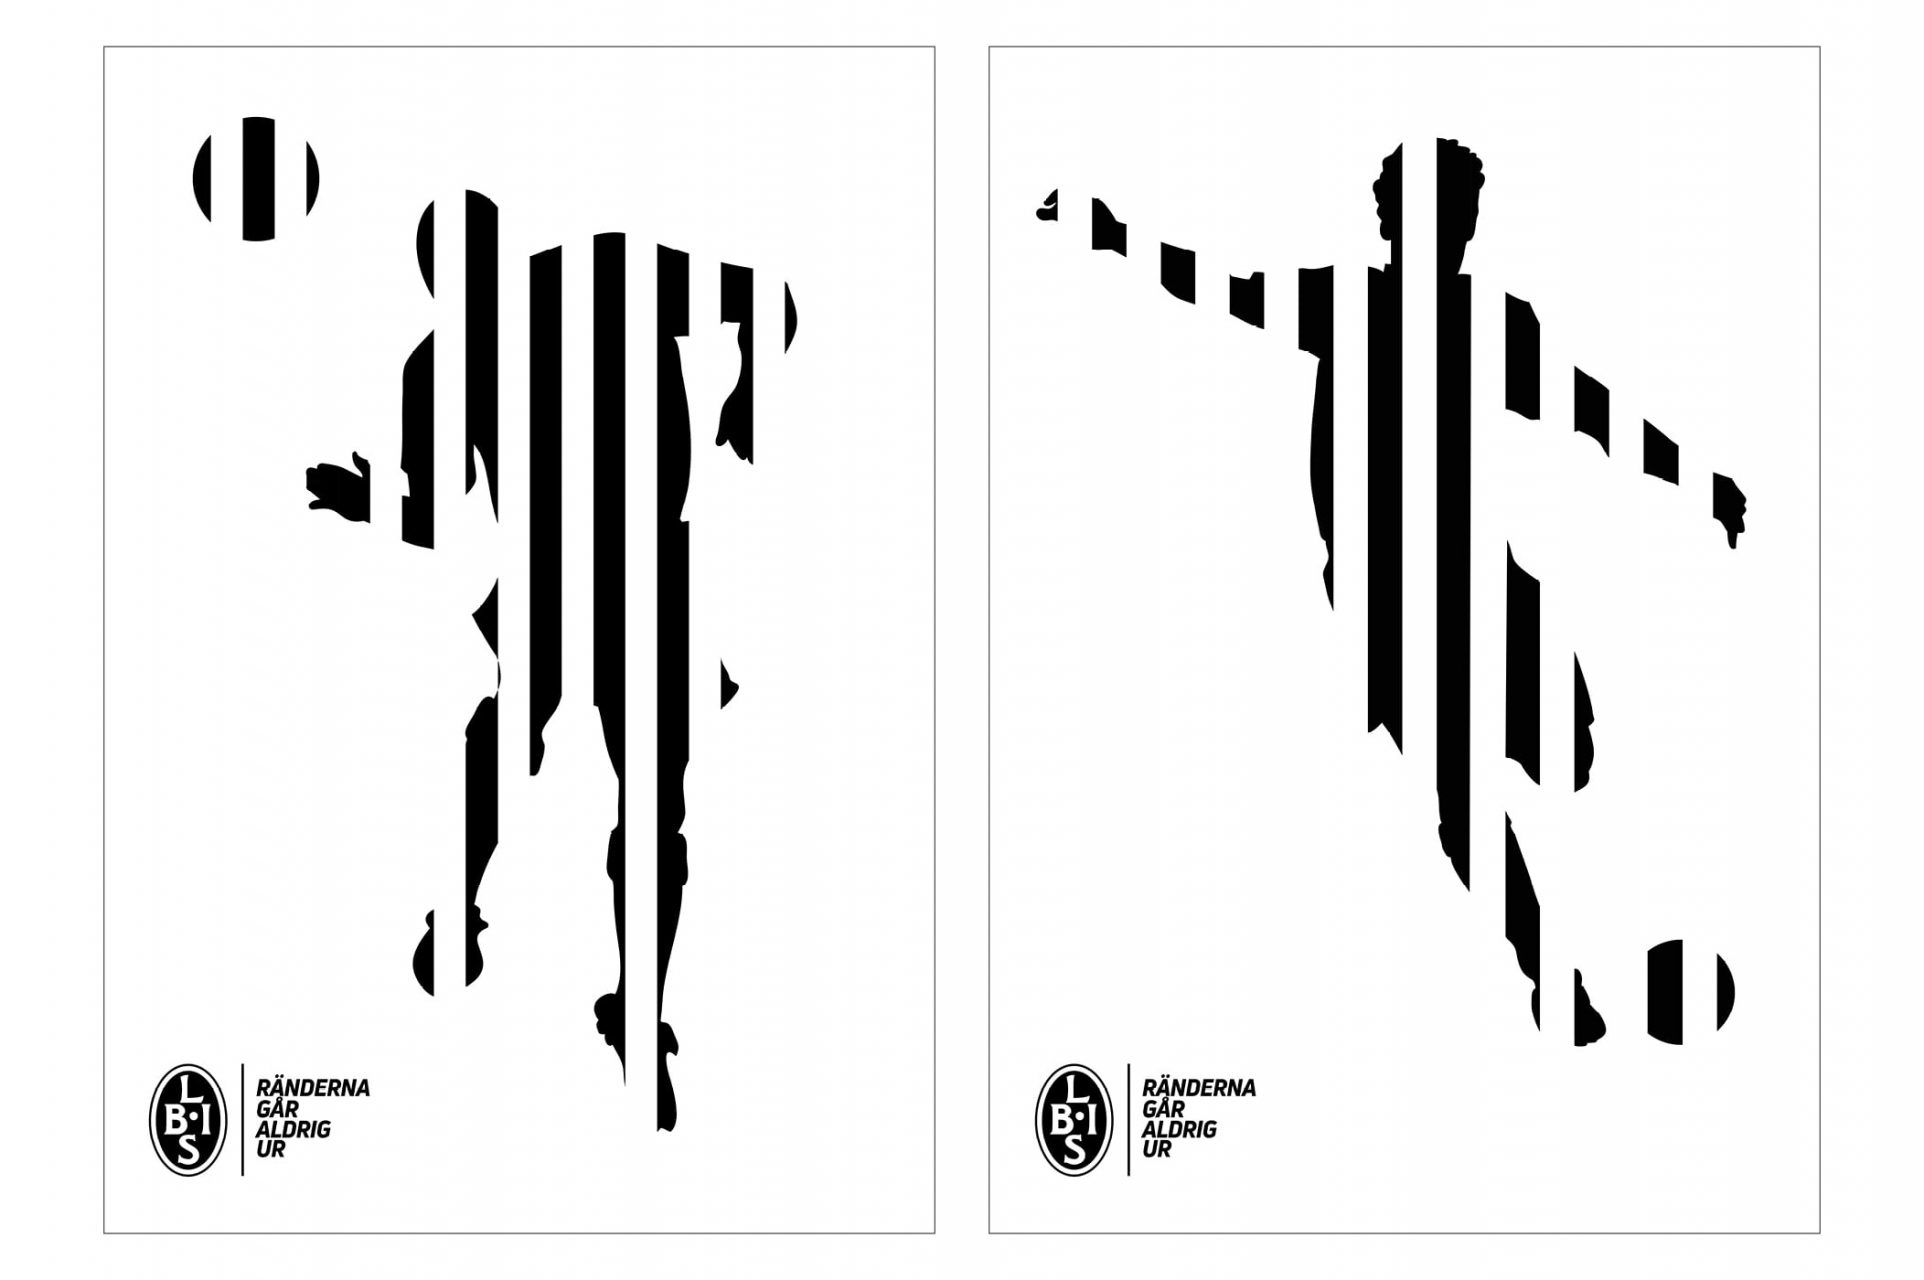 Trycksaker åt Landskrona Bois med en ny grafisk profil vitt och svart